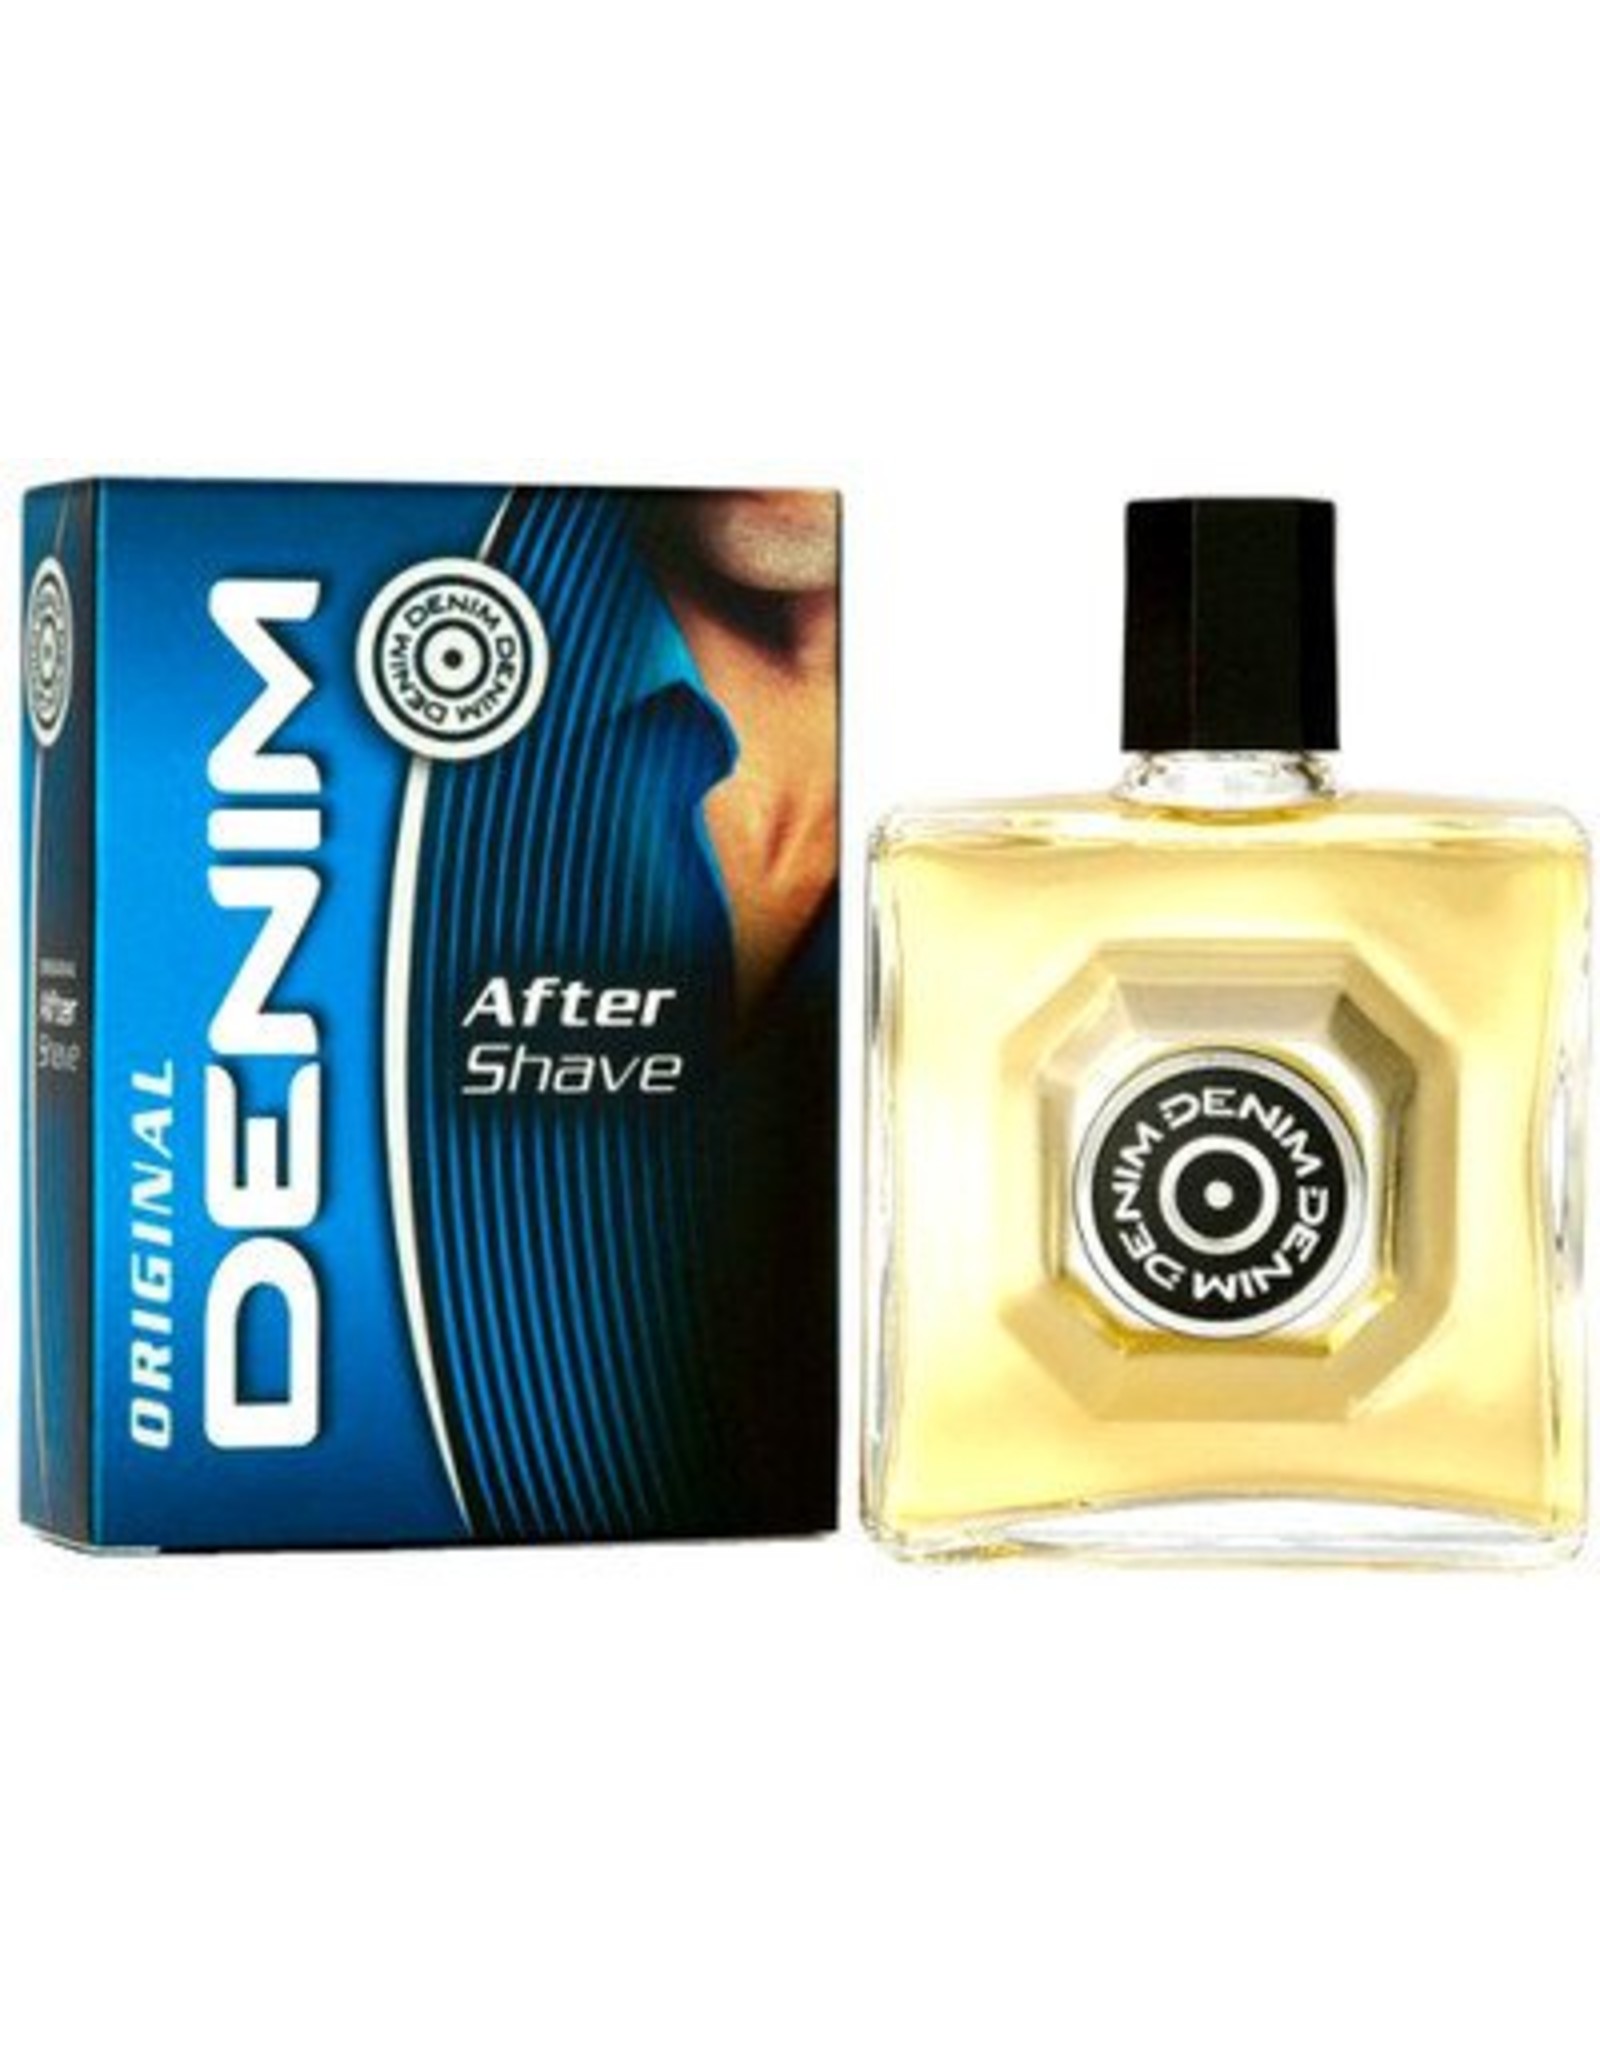 Denim Black 100 ml EDT Natural Spray Eau de Toilette Perfume For Men | eBay